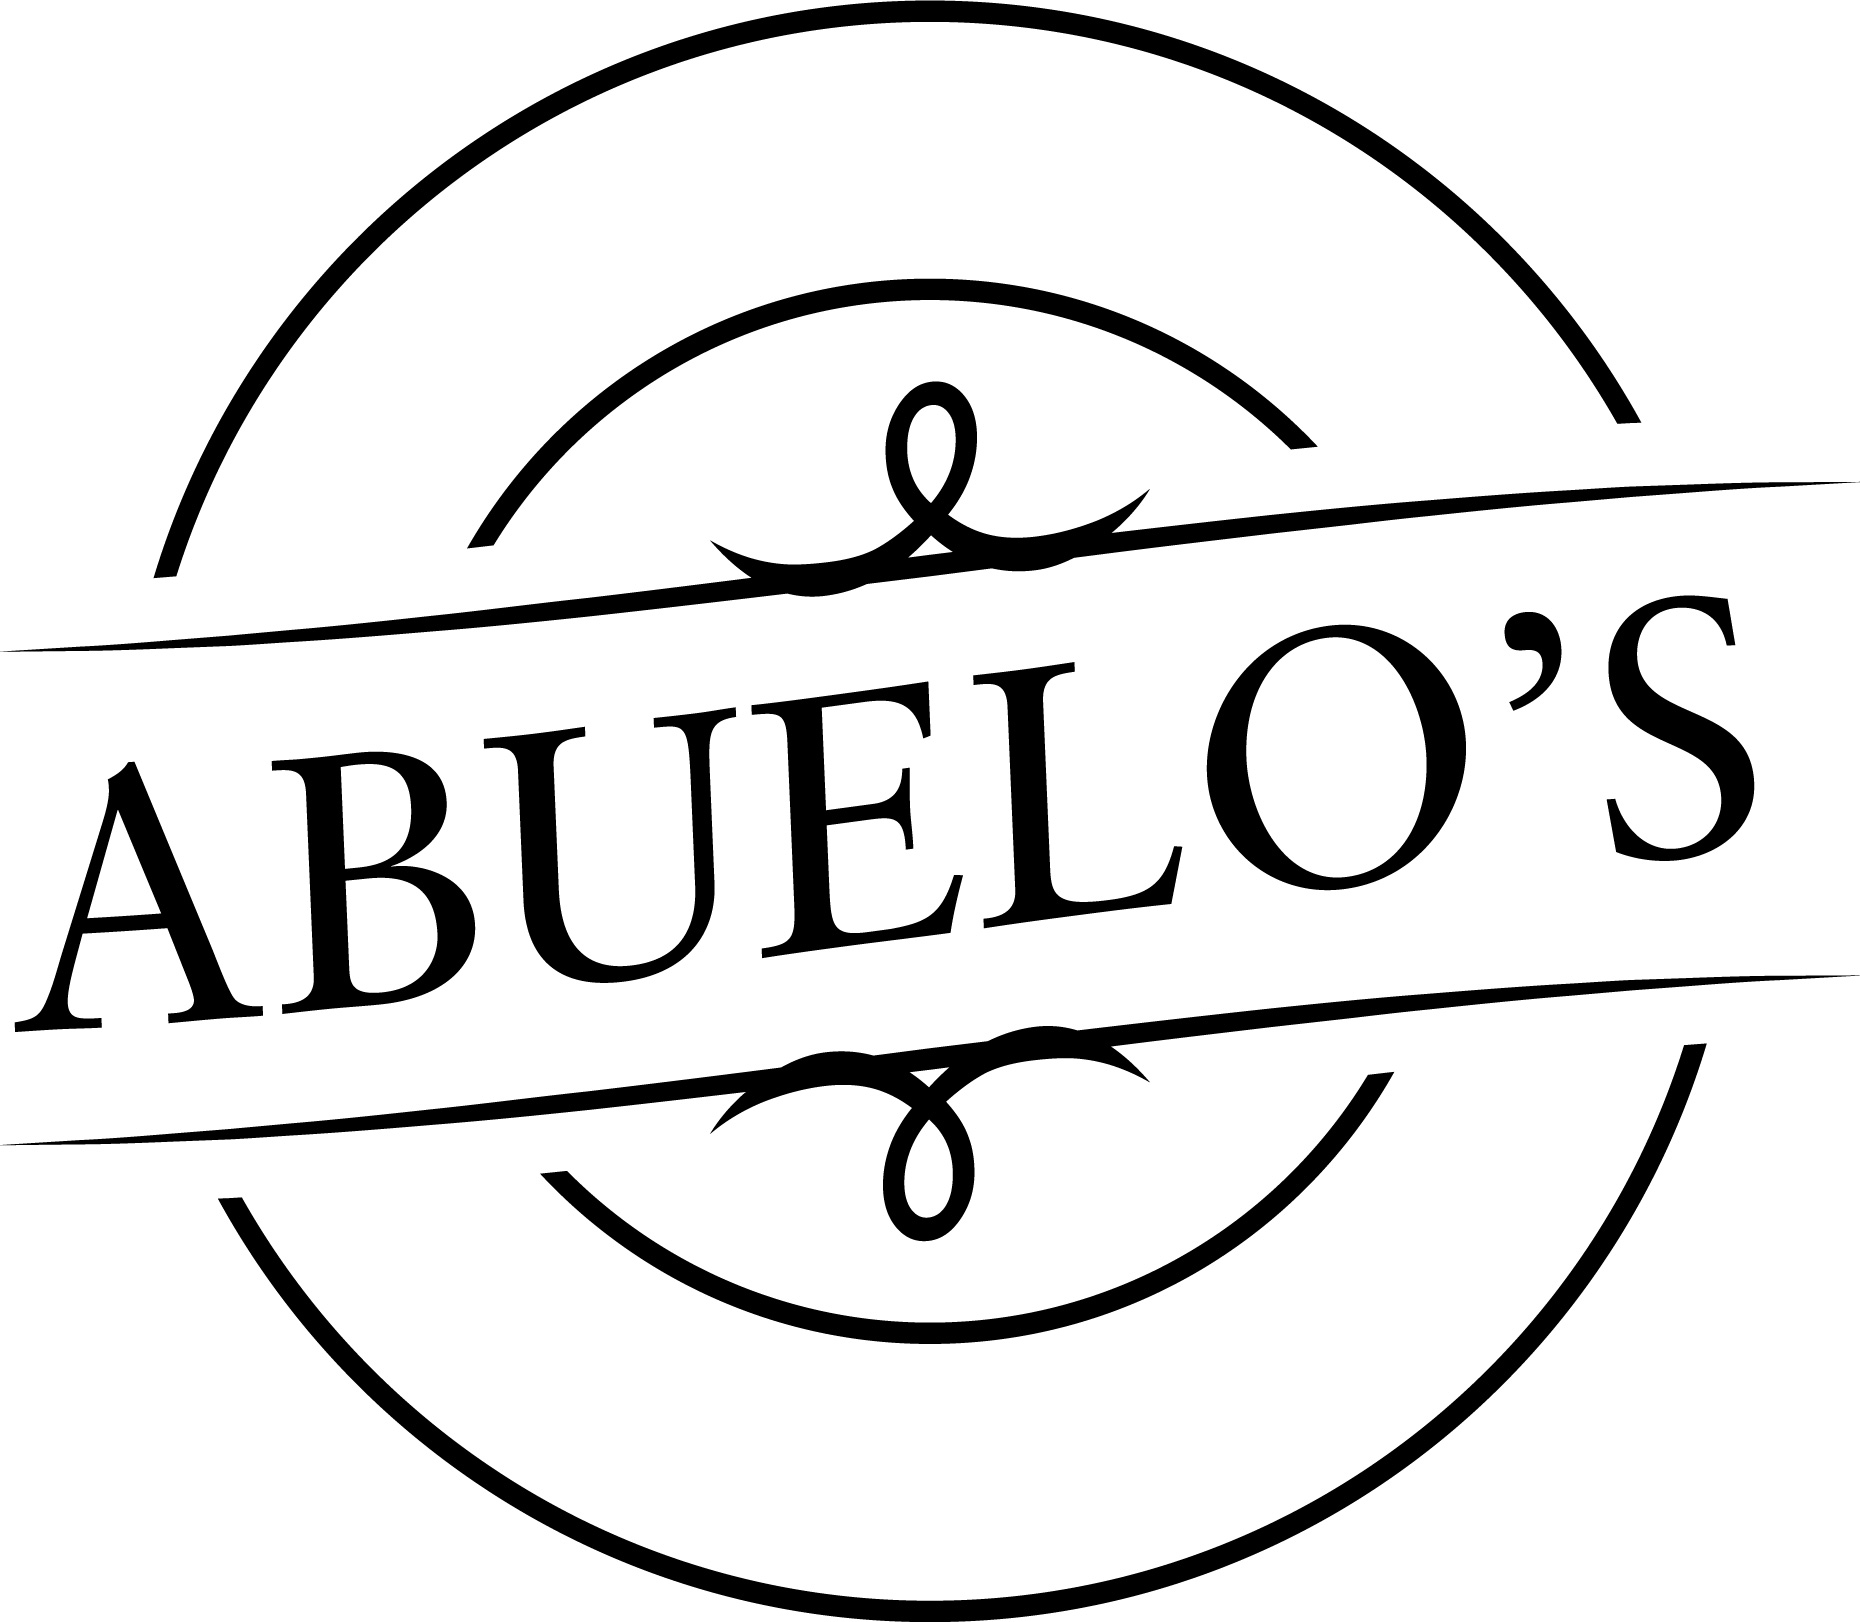 Abuelo's